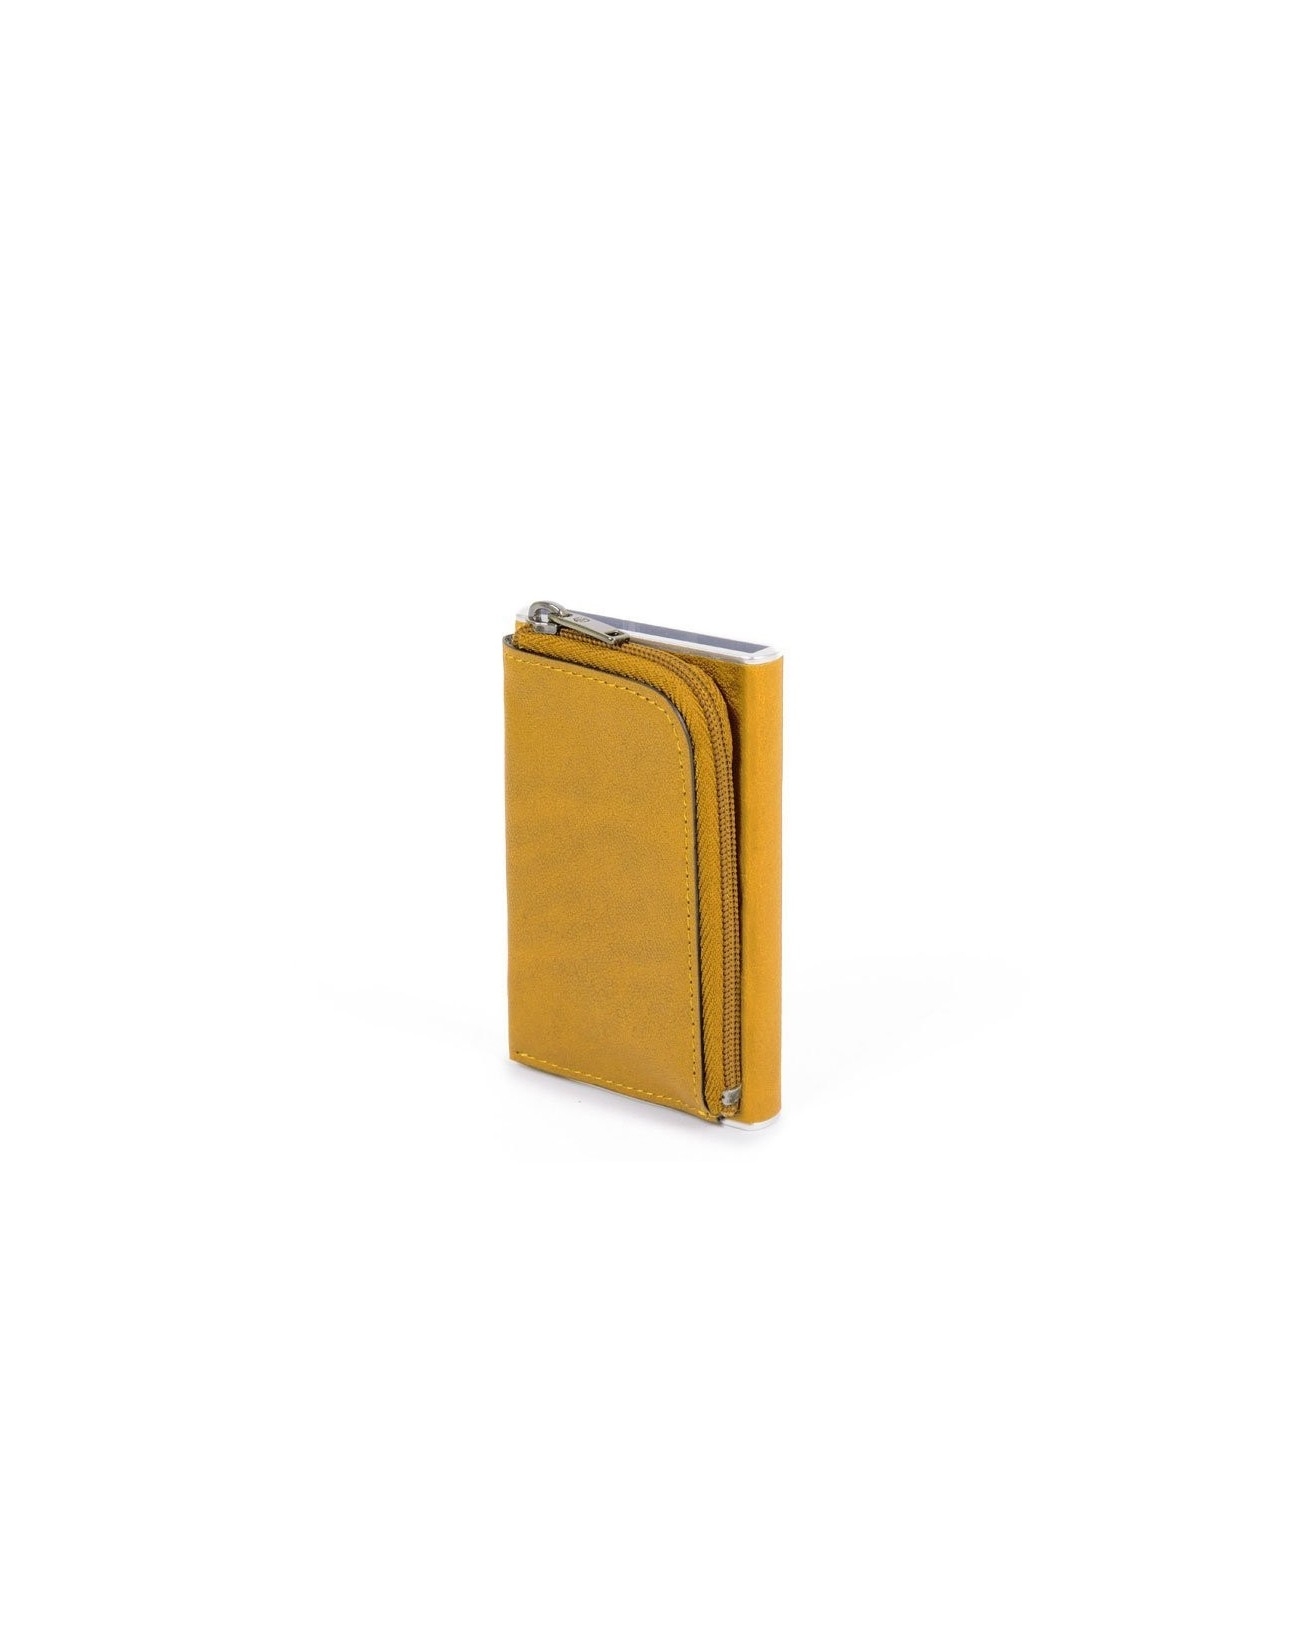 Mini Portafogli Piquadro Uomo Compact Wallet monete e Credit Card Pp5359b3/g